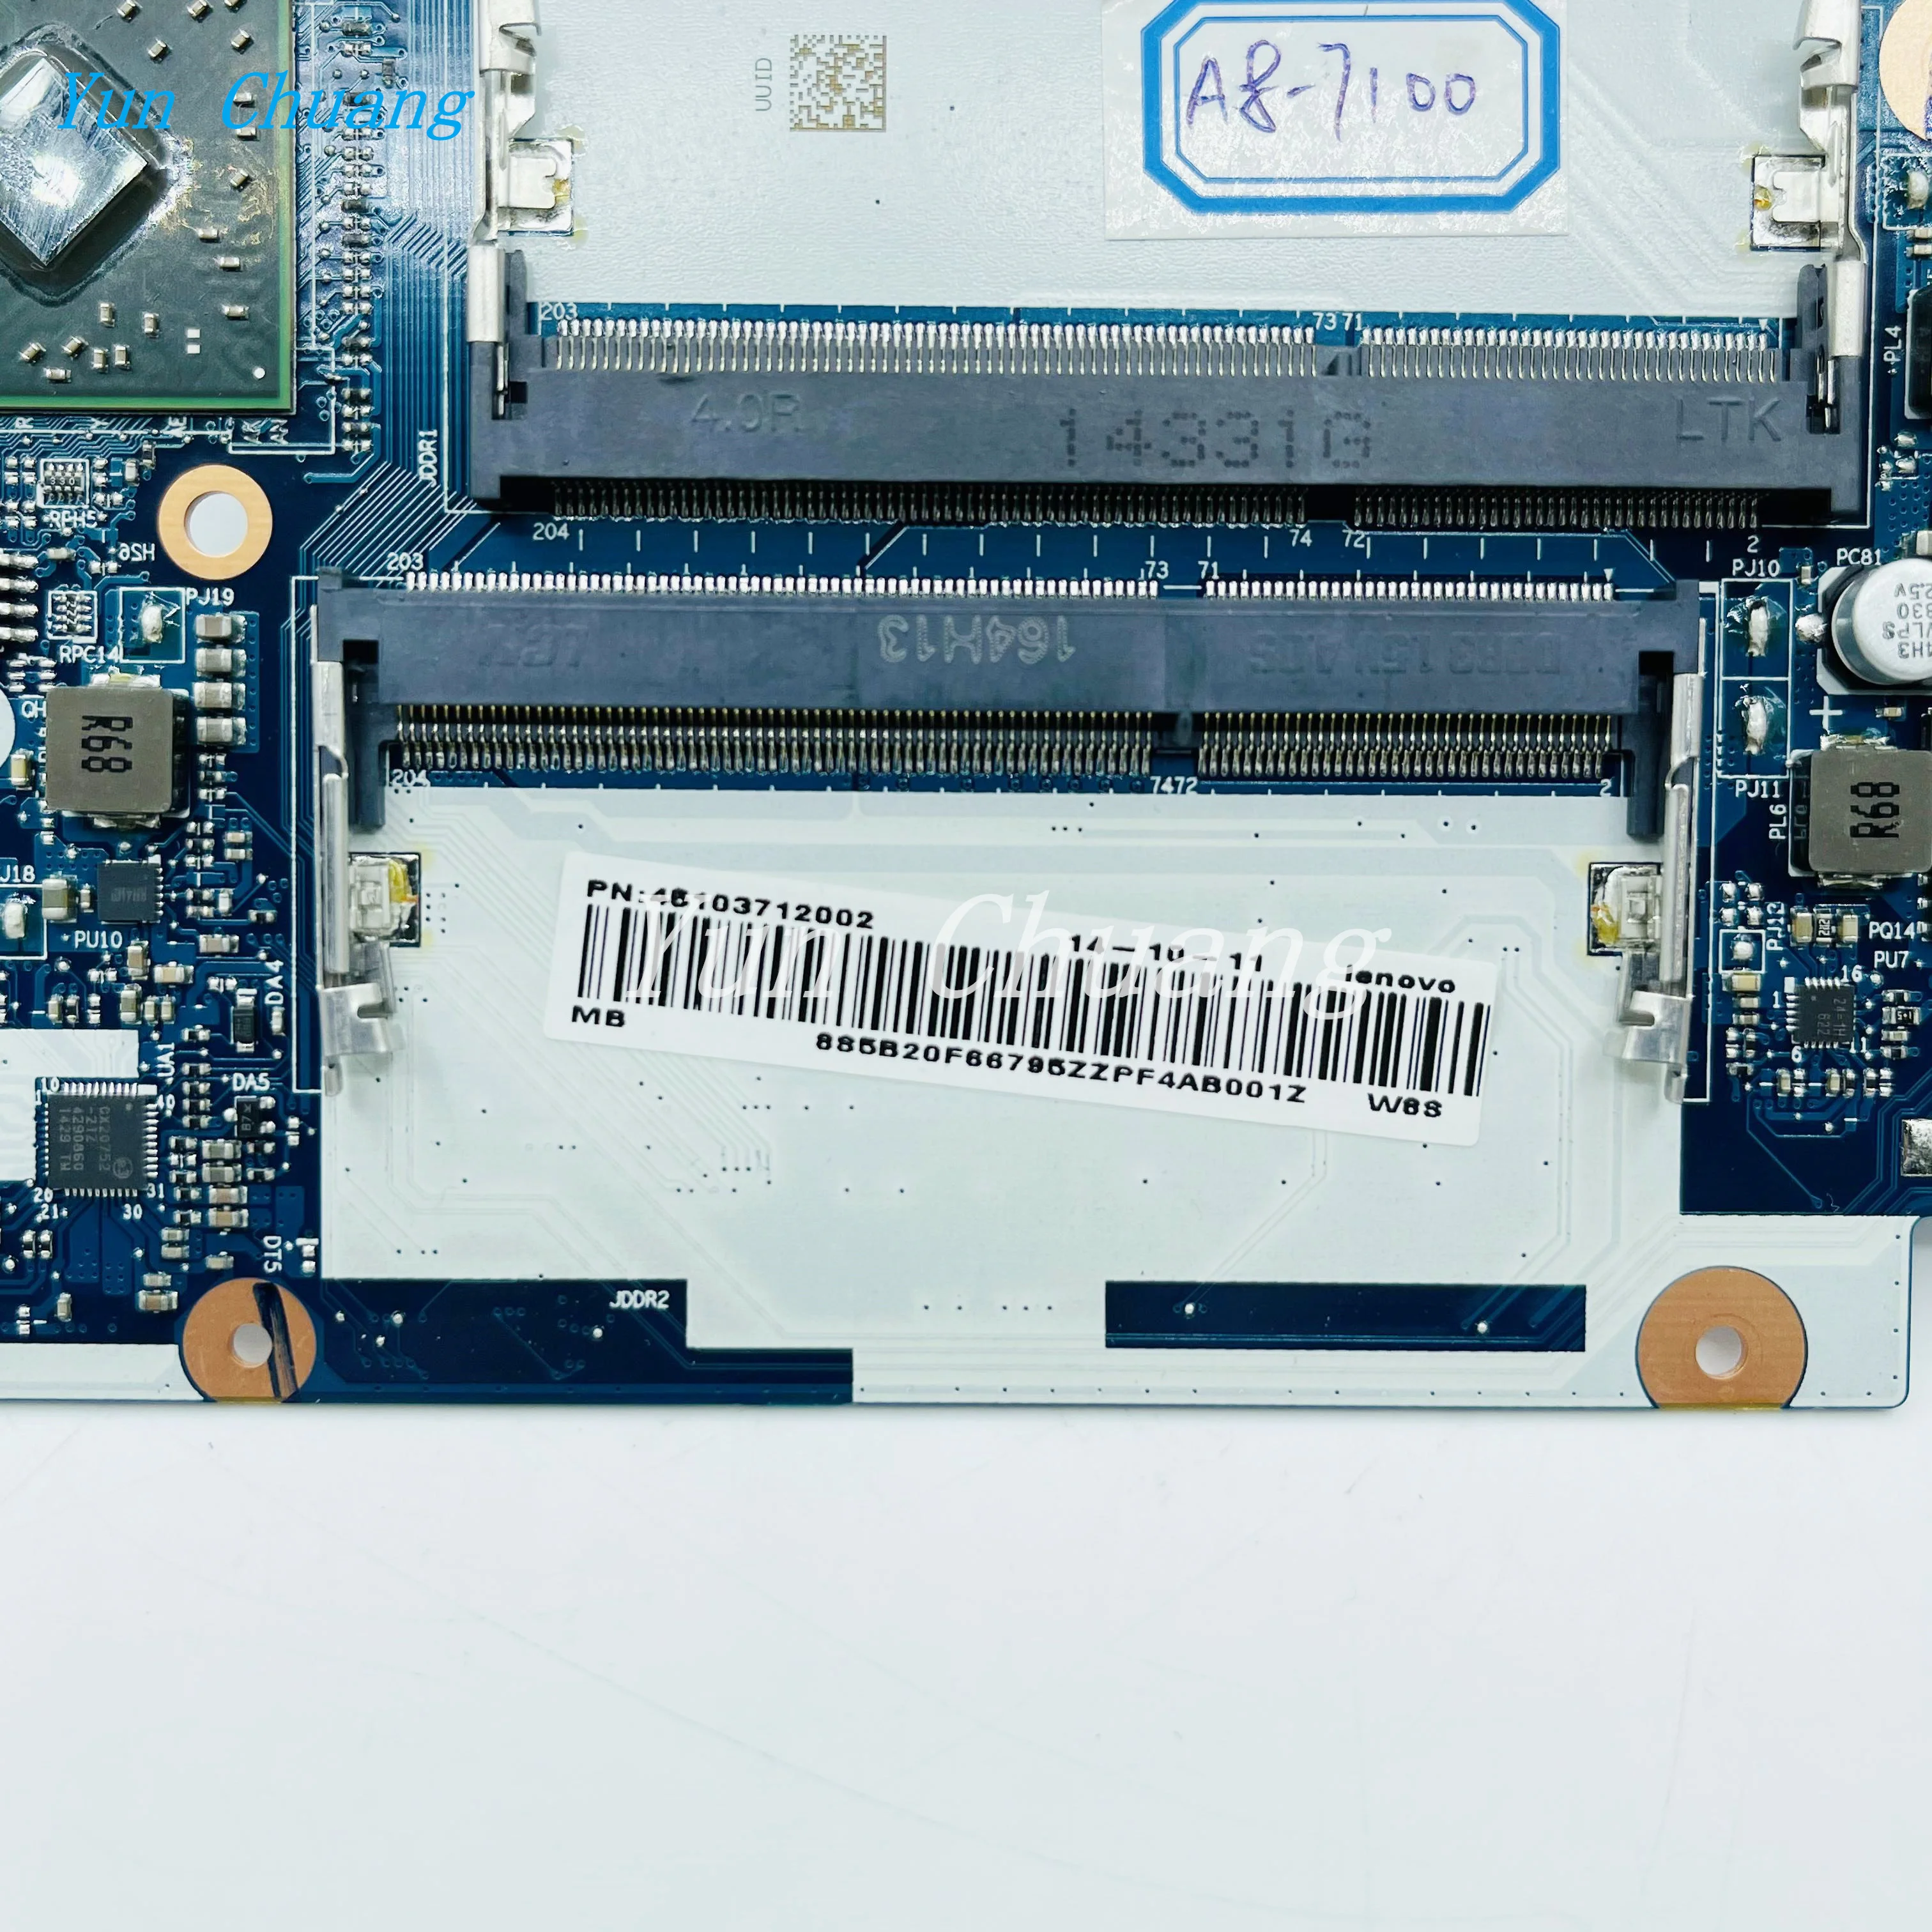 Материнская плата ACLU7/ACLU8 NM-A291 для ноутбука Lenovo Z50-75 Материнская плата FRU 5B20F66795 материнская плата С процессором A8-7100 2G-GPU DDR3L